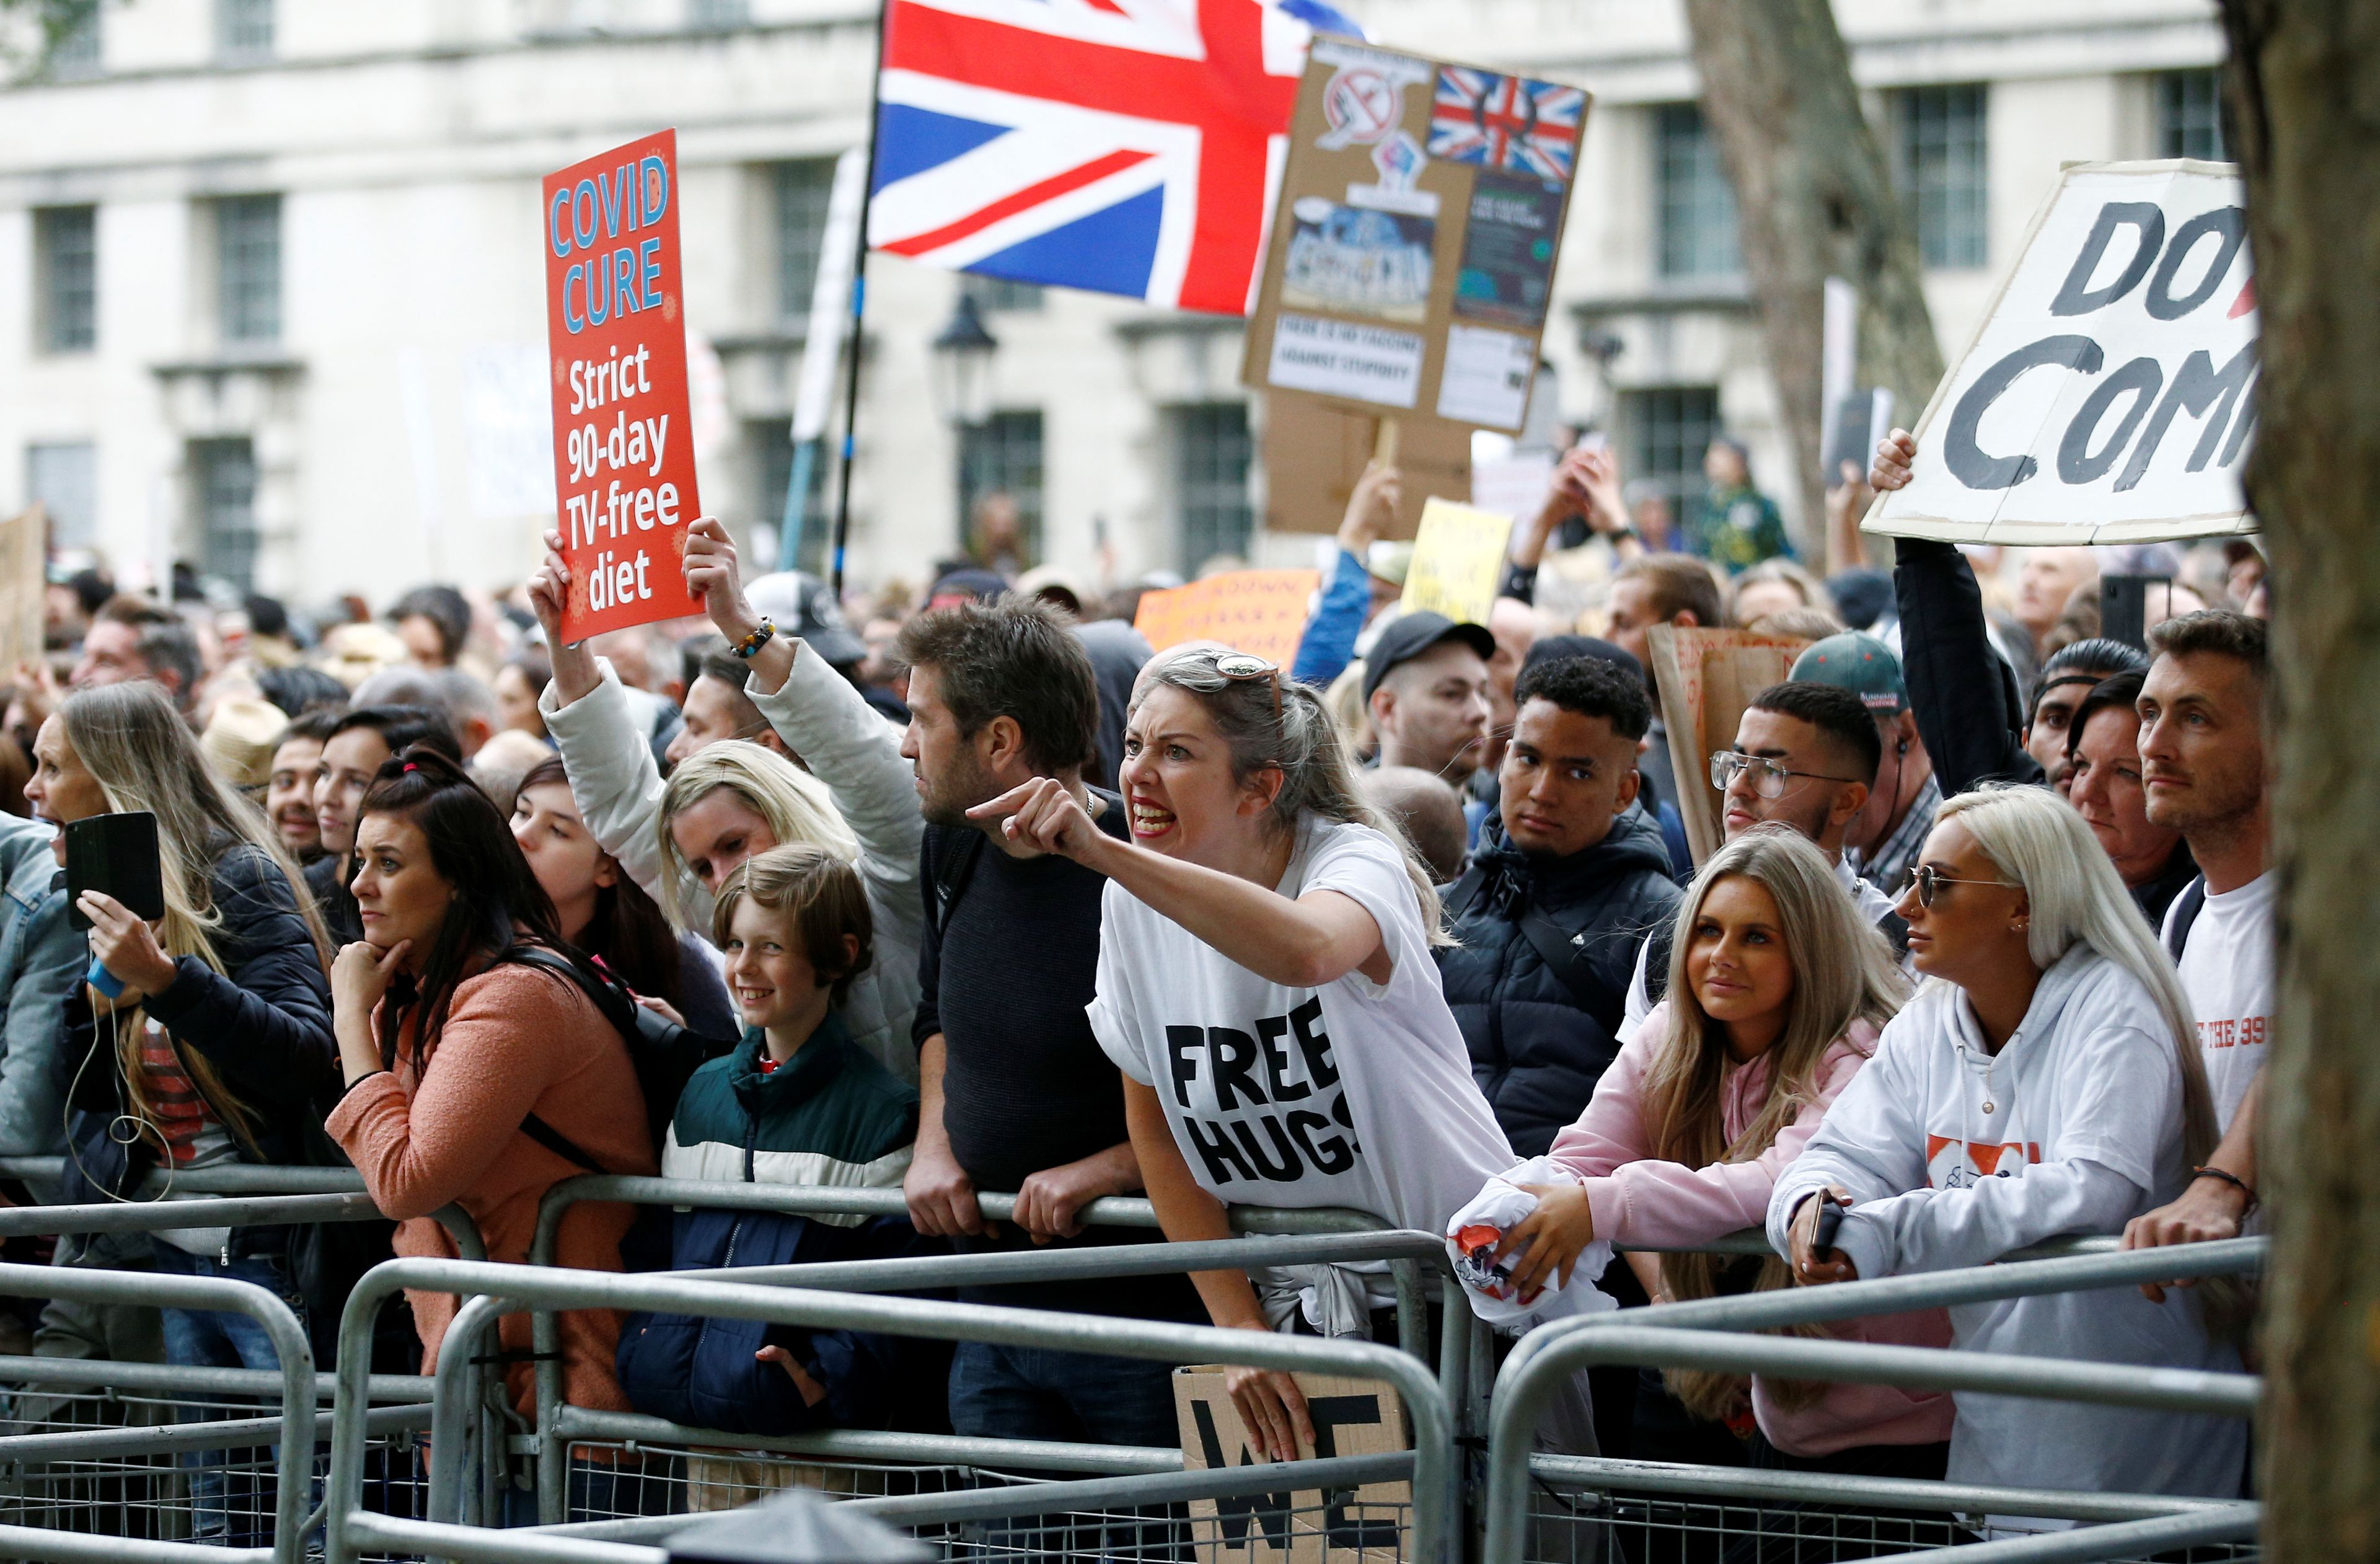 Manifestación contra el confinamiento y el uso de mascarillas en Londres.